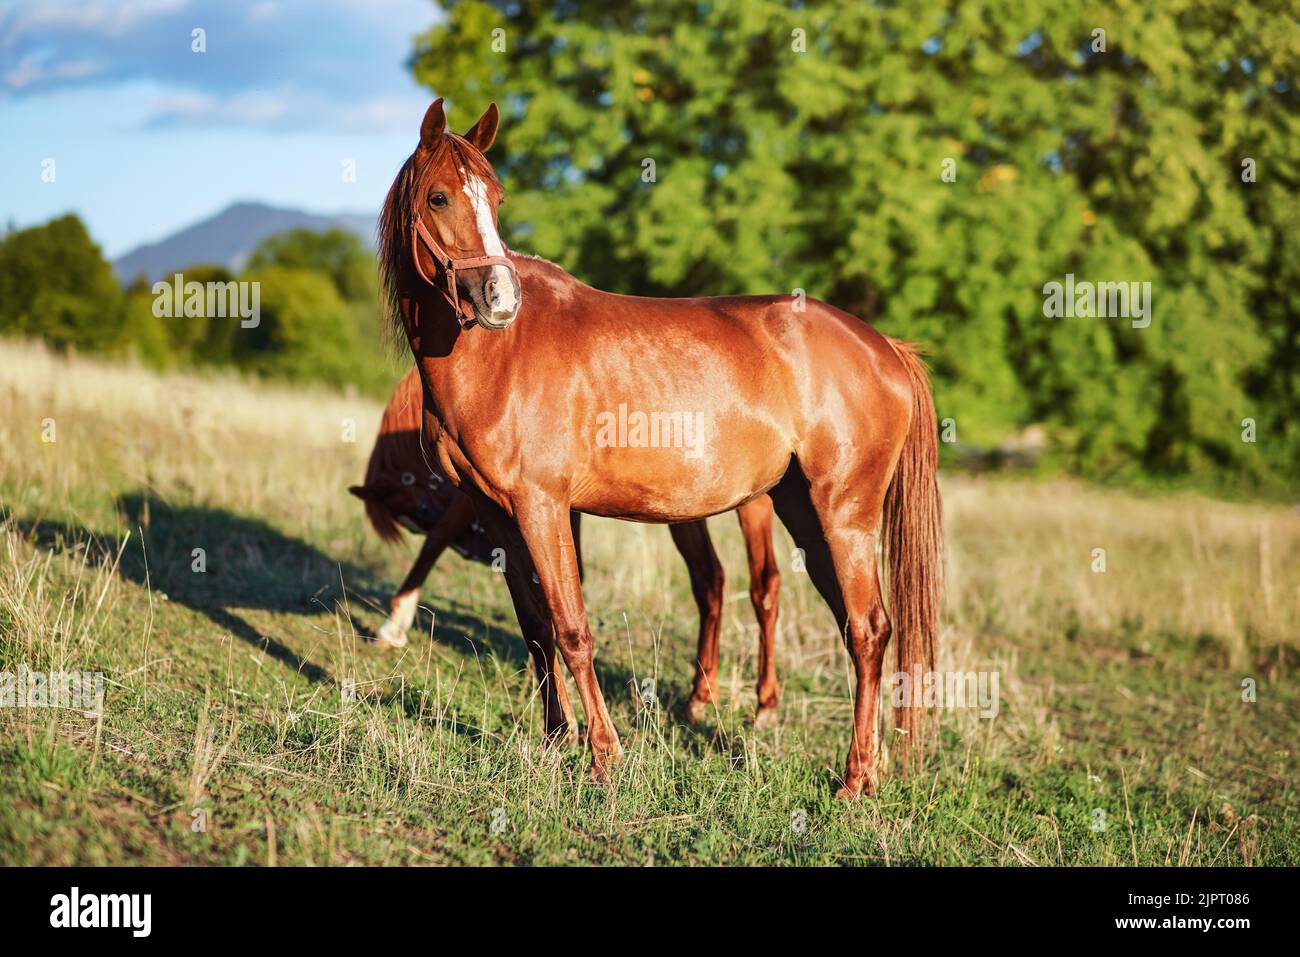 Braunes oder kastanienbraunes arabisches Pferd auf Graswiese, ein weiteres Tier dahinter, verschwommene Bäume am sonnigen Tageshintergrund Stockfoto